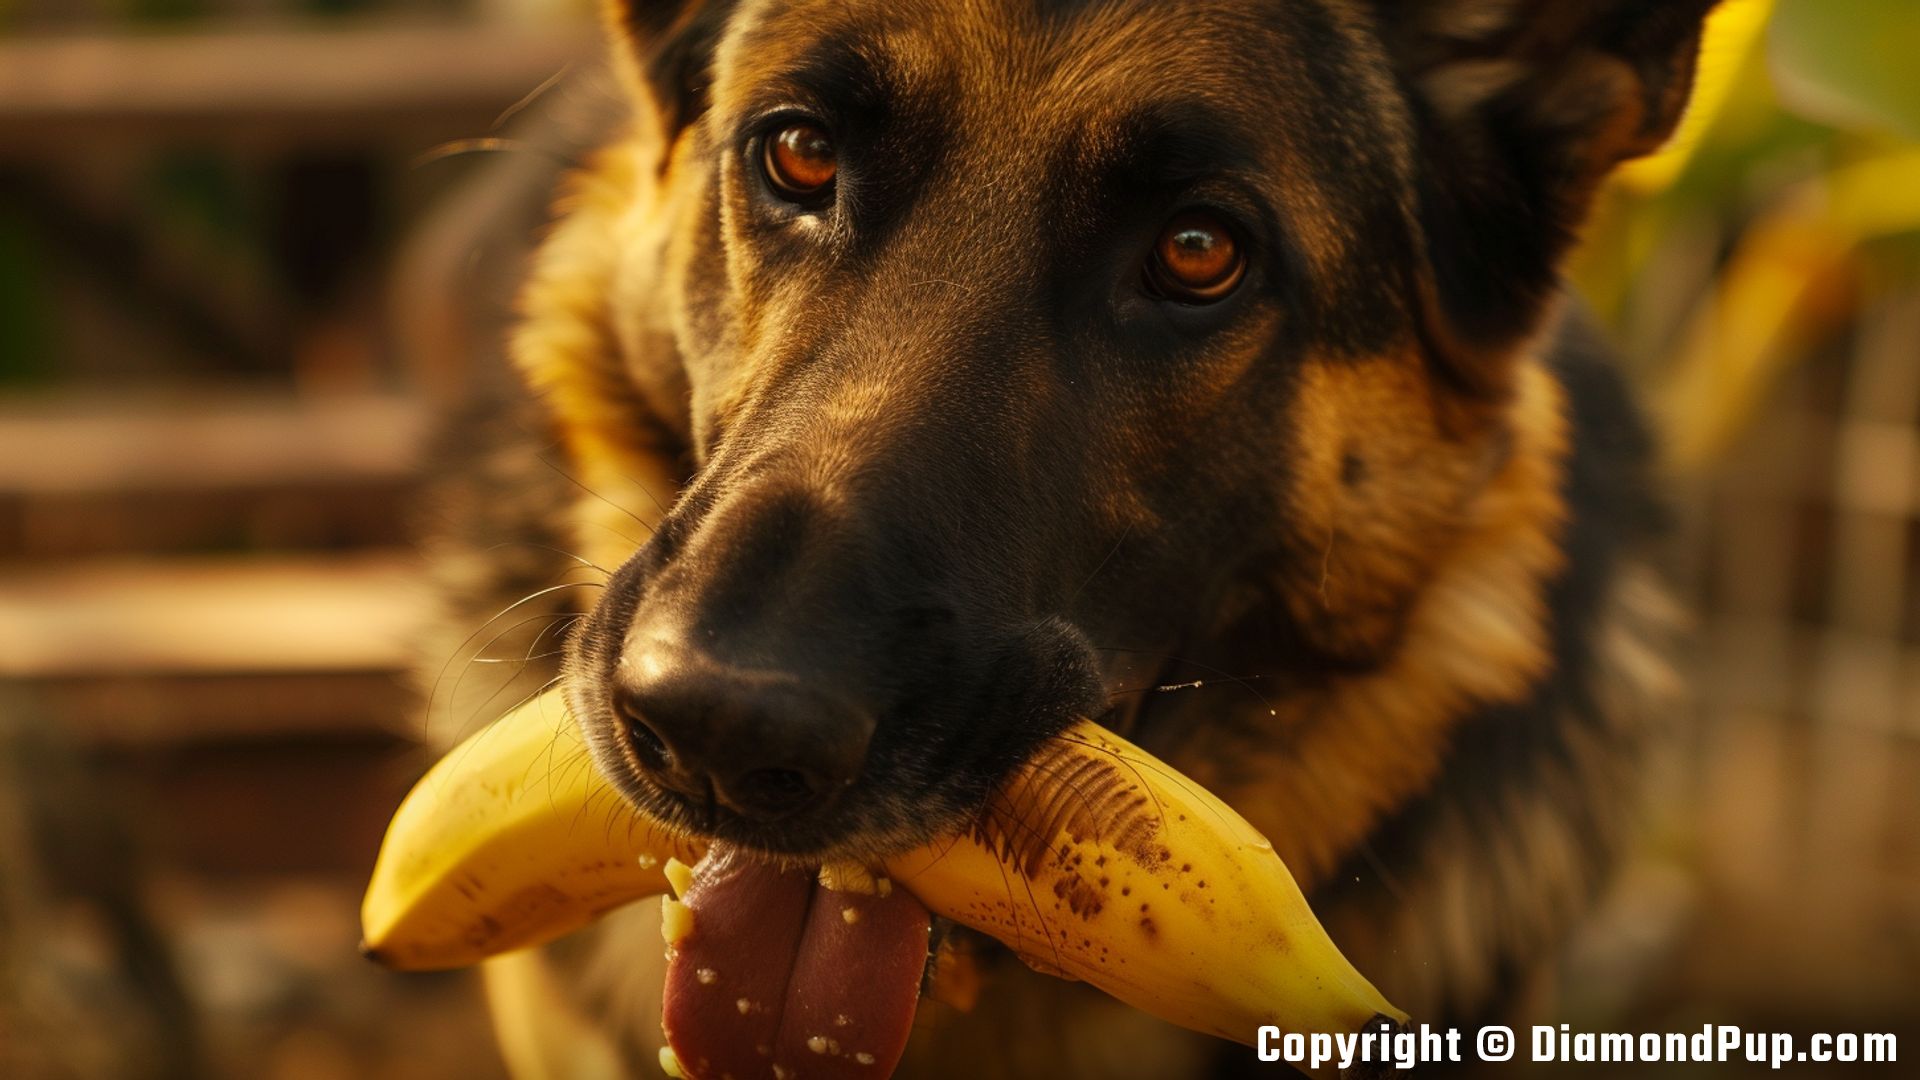 Image of a Playful German Shepherd Snacking on Banana